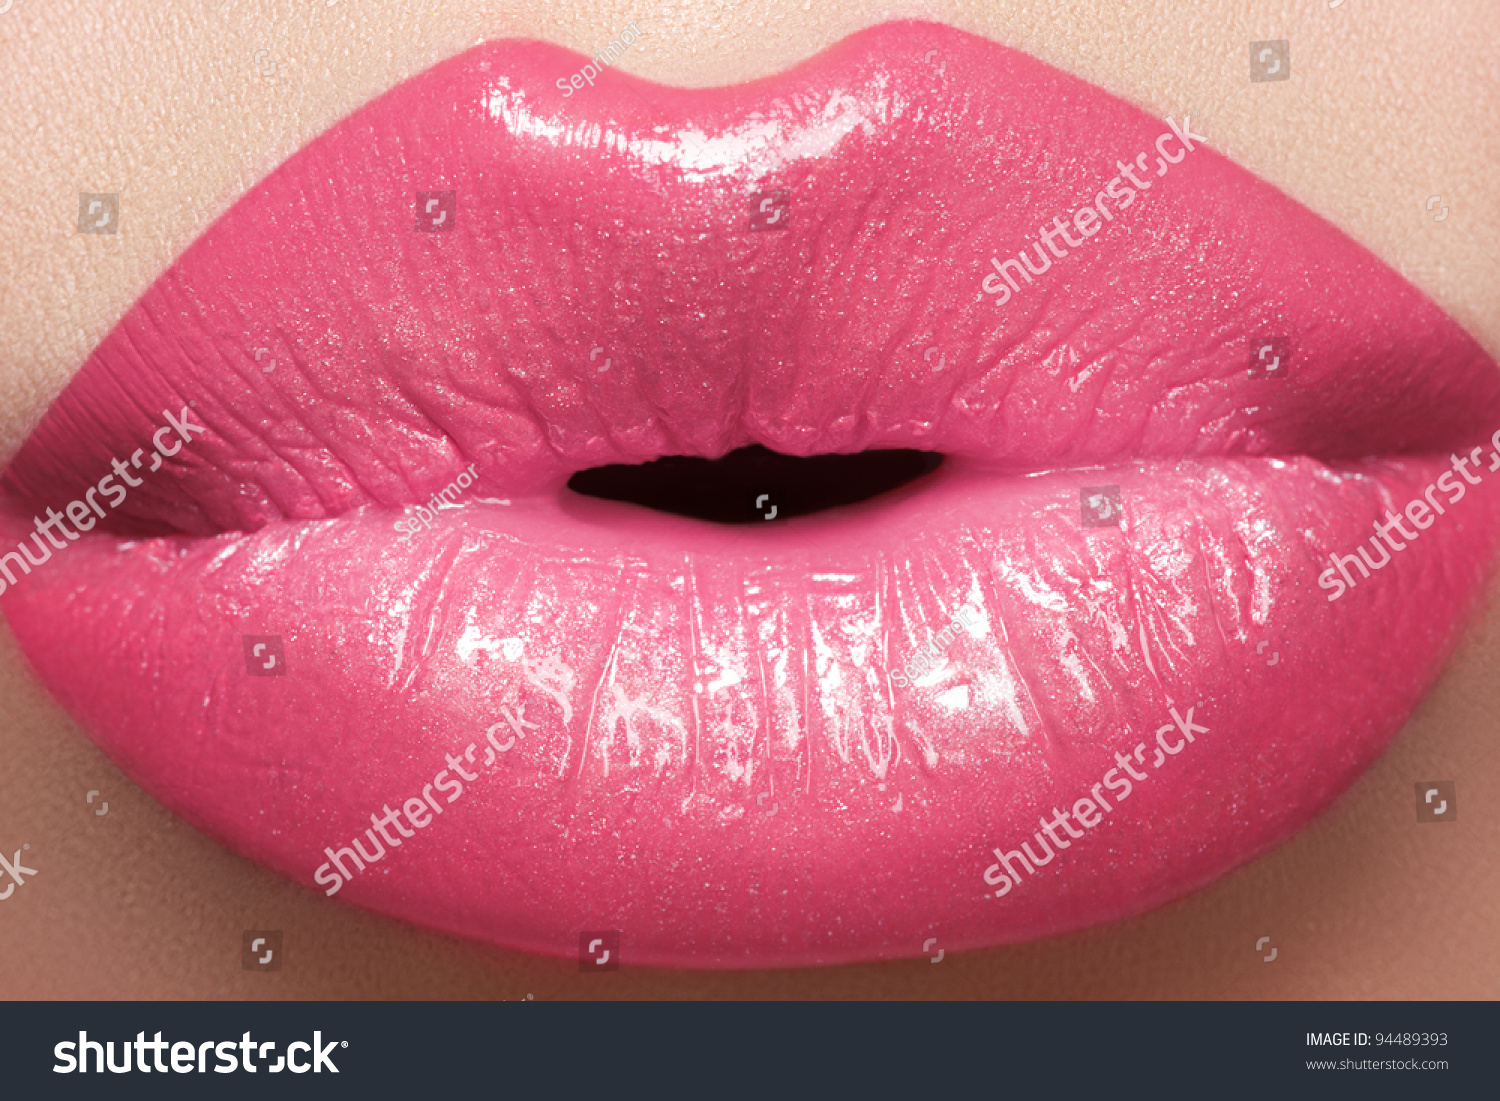 甘いキス セクシーなピンクの濡れた唇のメイク 美しい唇の接写 の写真素材 今すぐ編集